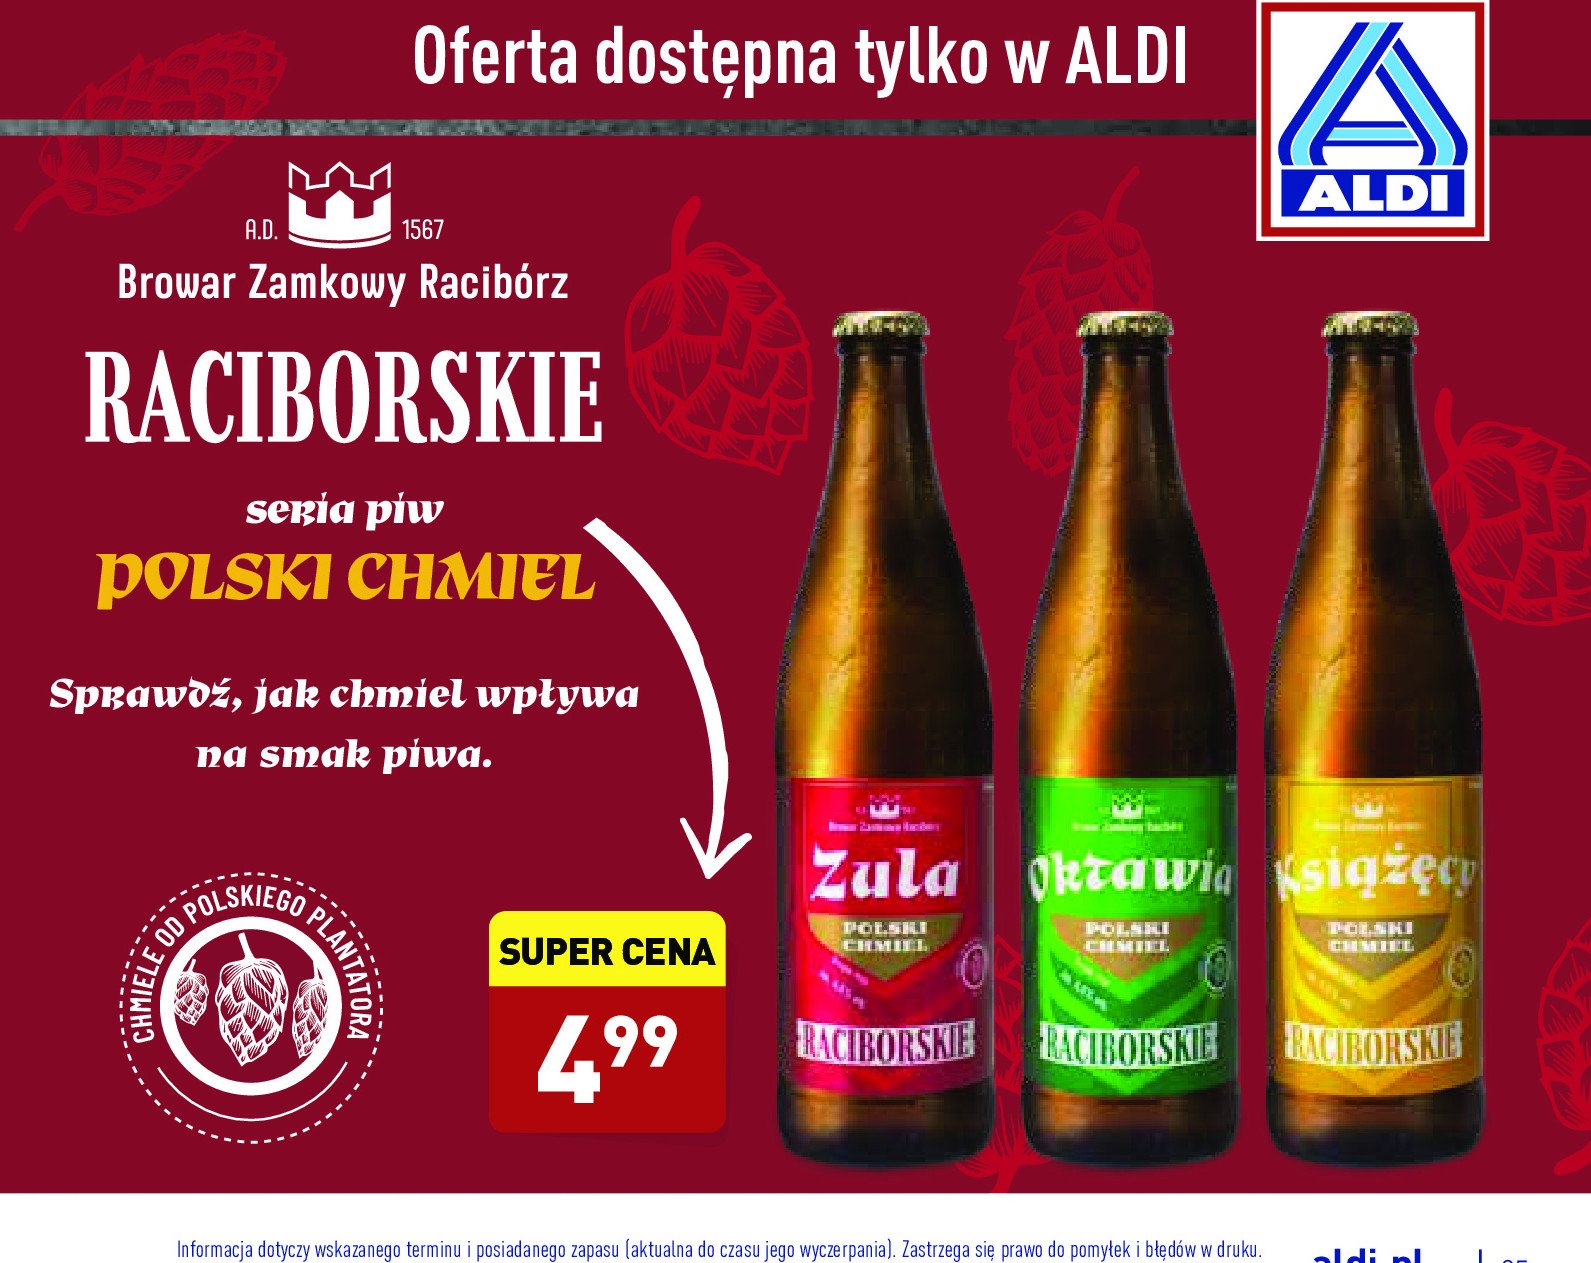 Piwo Raciborskie zula promocje